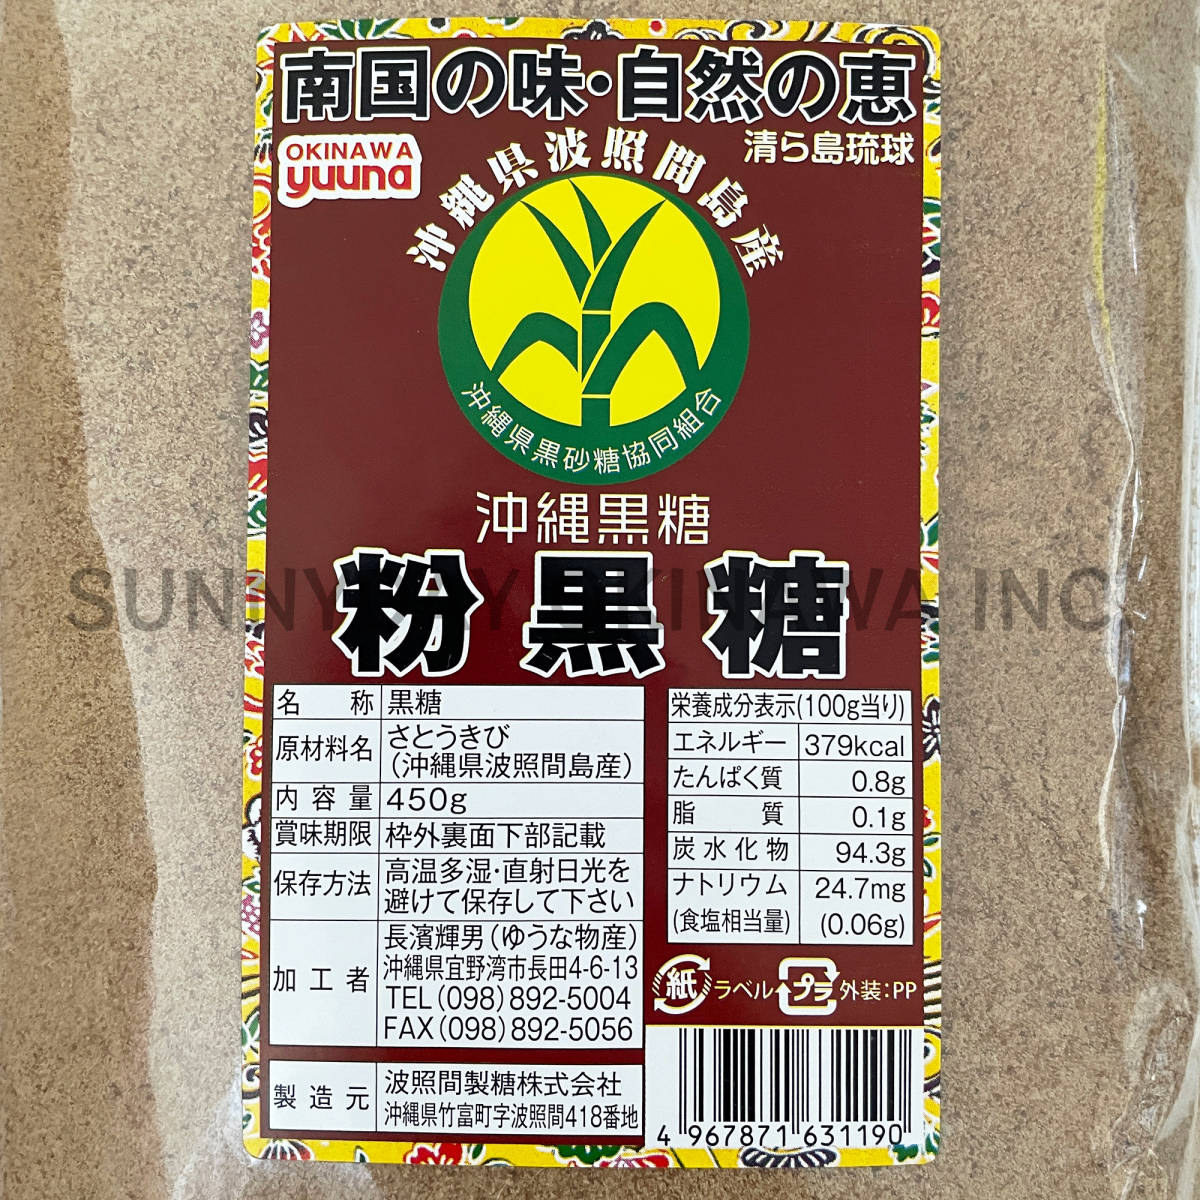  волна . промежуток остров производство мука коричневый сахар 450g 1 пакет Okinawa префектура производство порошок оригинальный коричневый сахар коричневый сахар пудра . земля производство ваш заказ 